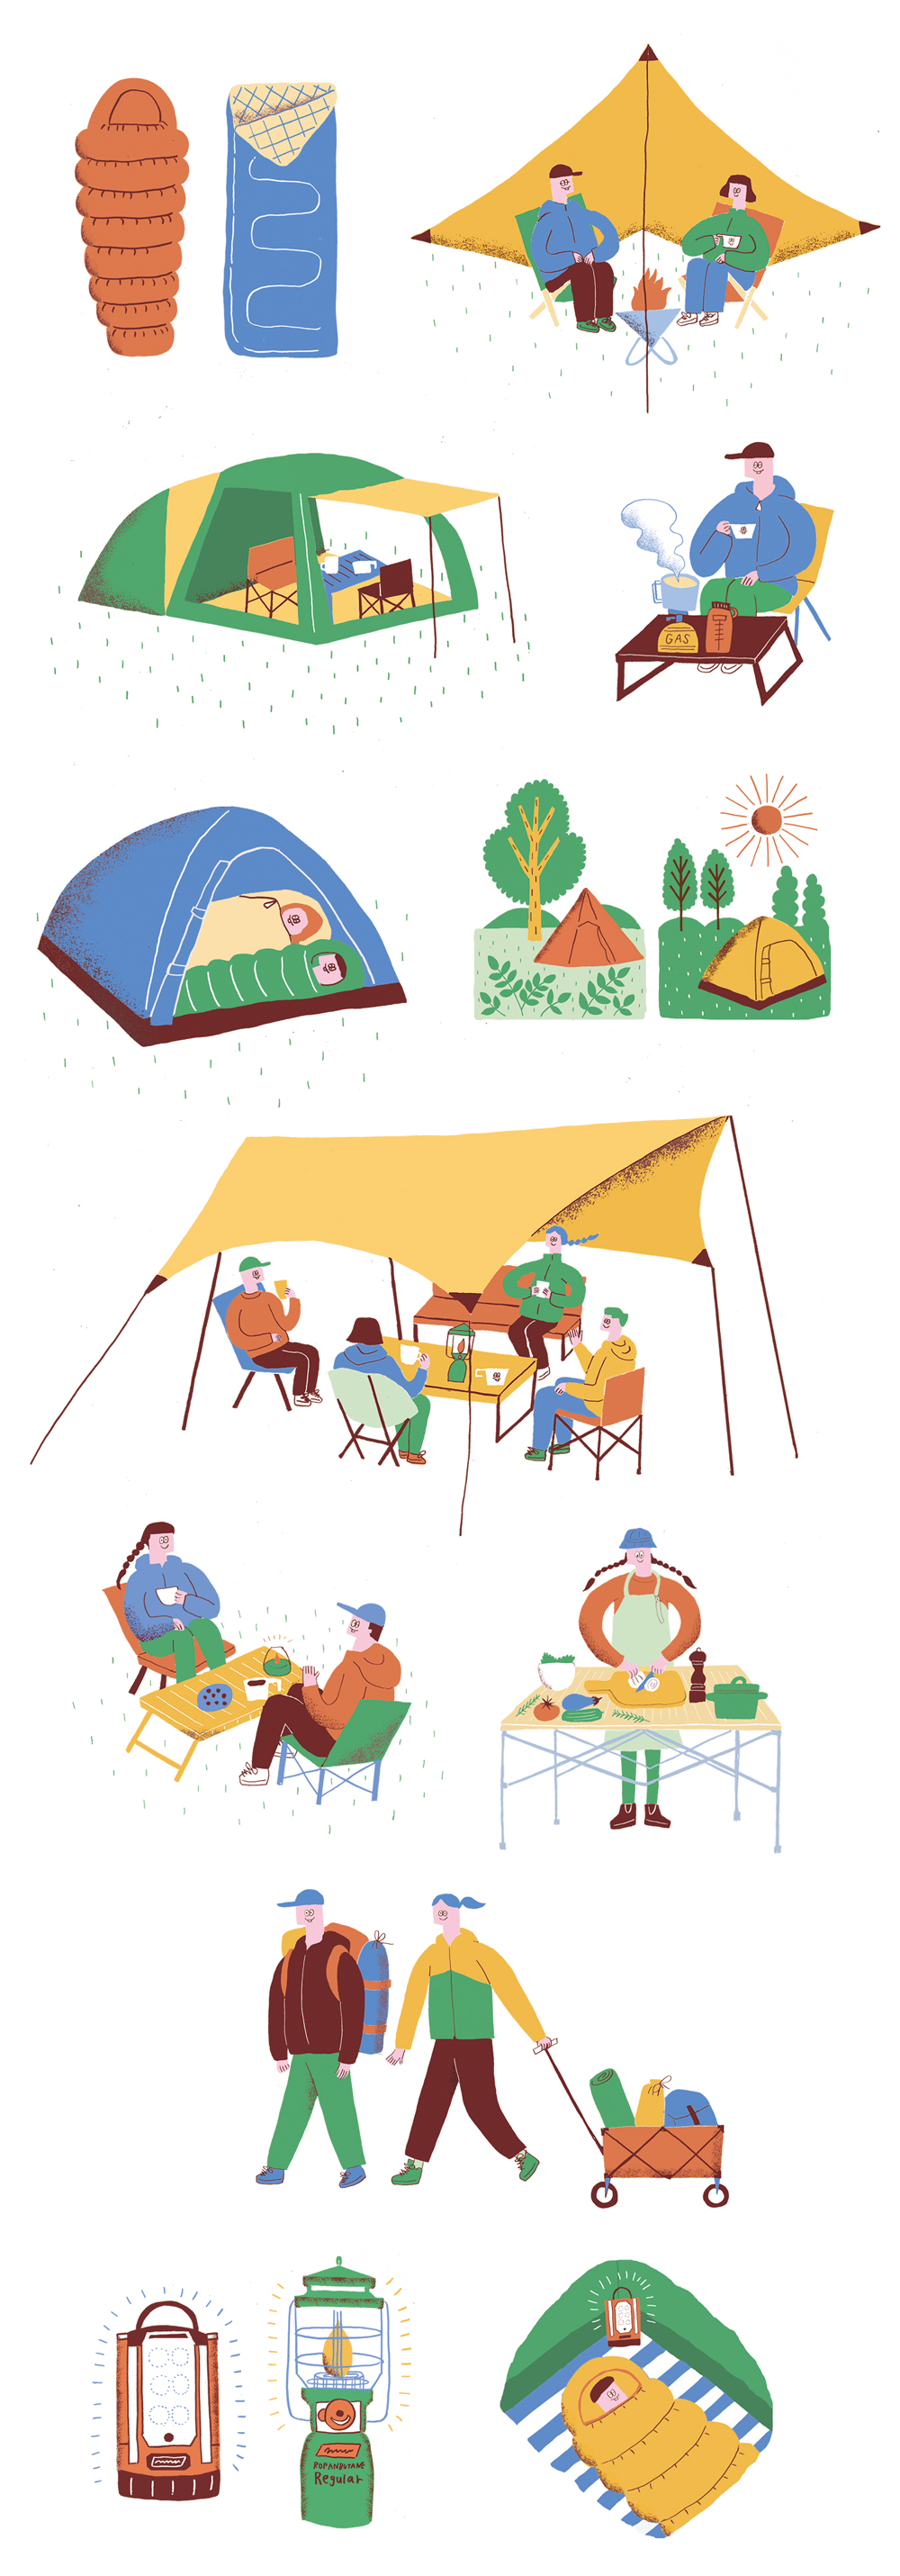 キャンプ道具カタログ イラスト コグレチエコ Chieko Kogure